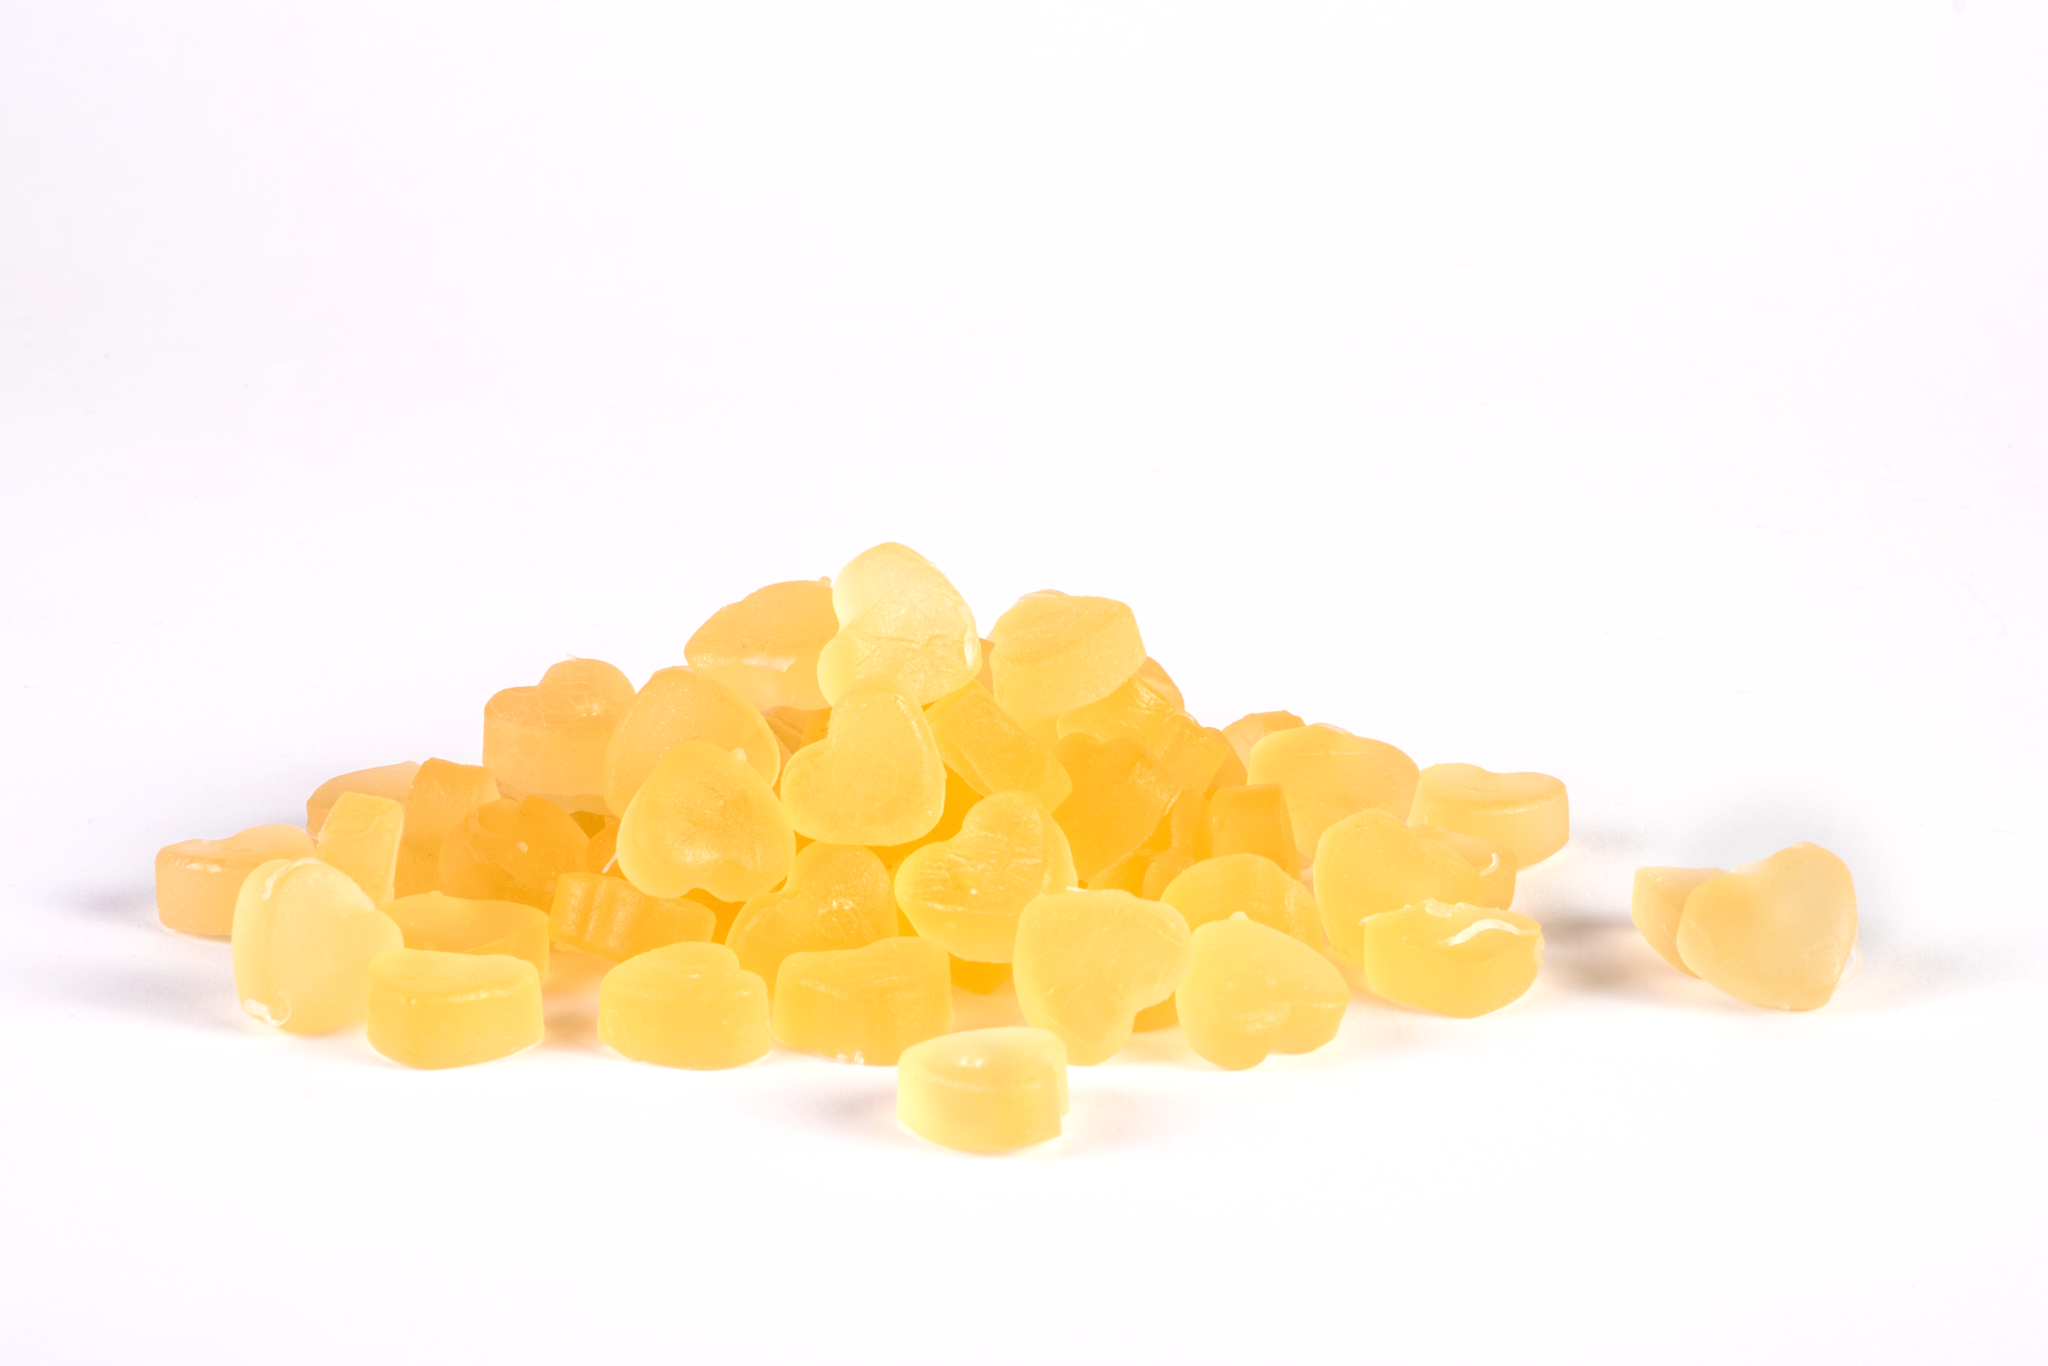 Gomme masticabili Gummyvit Ginger disposte accanto alla loro confezione aperta, evidenziando la loro forma e il colore che richiama lo Zenzero, ingrediente principale.